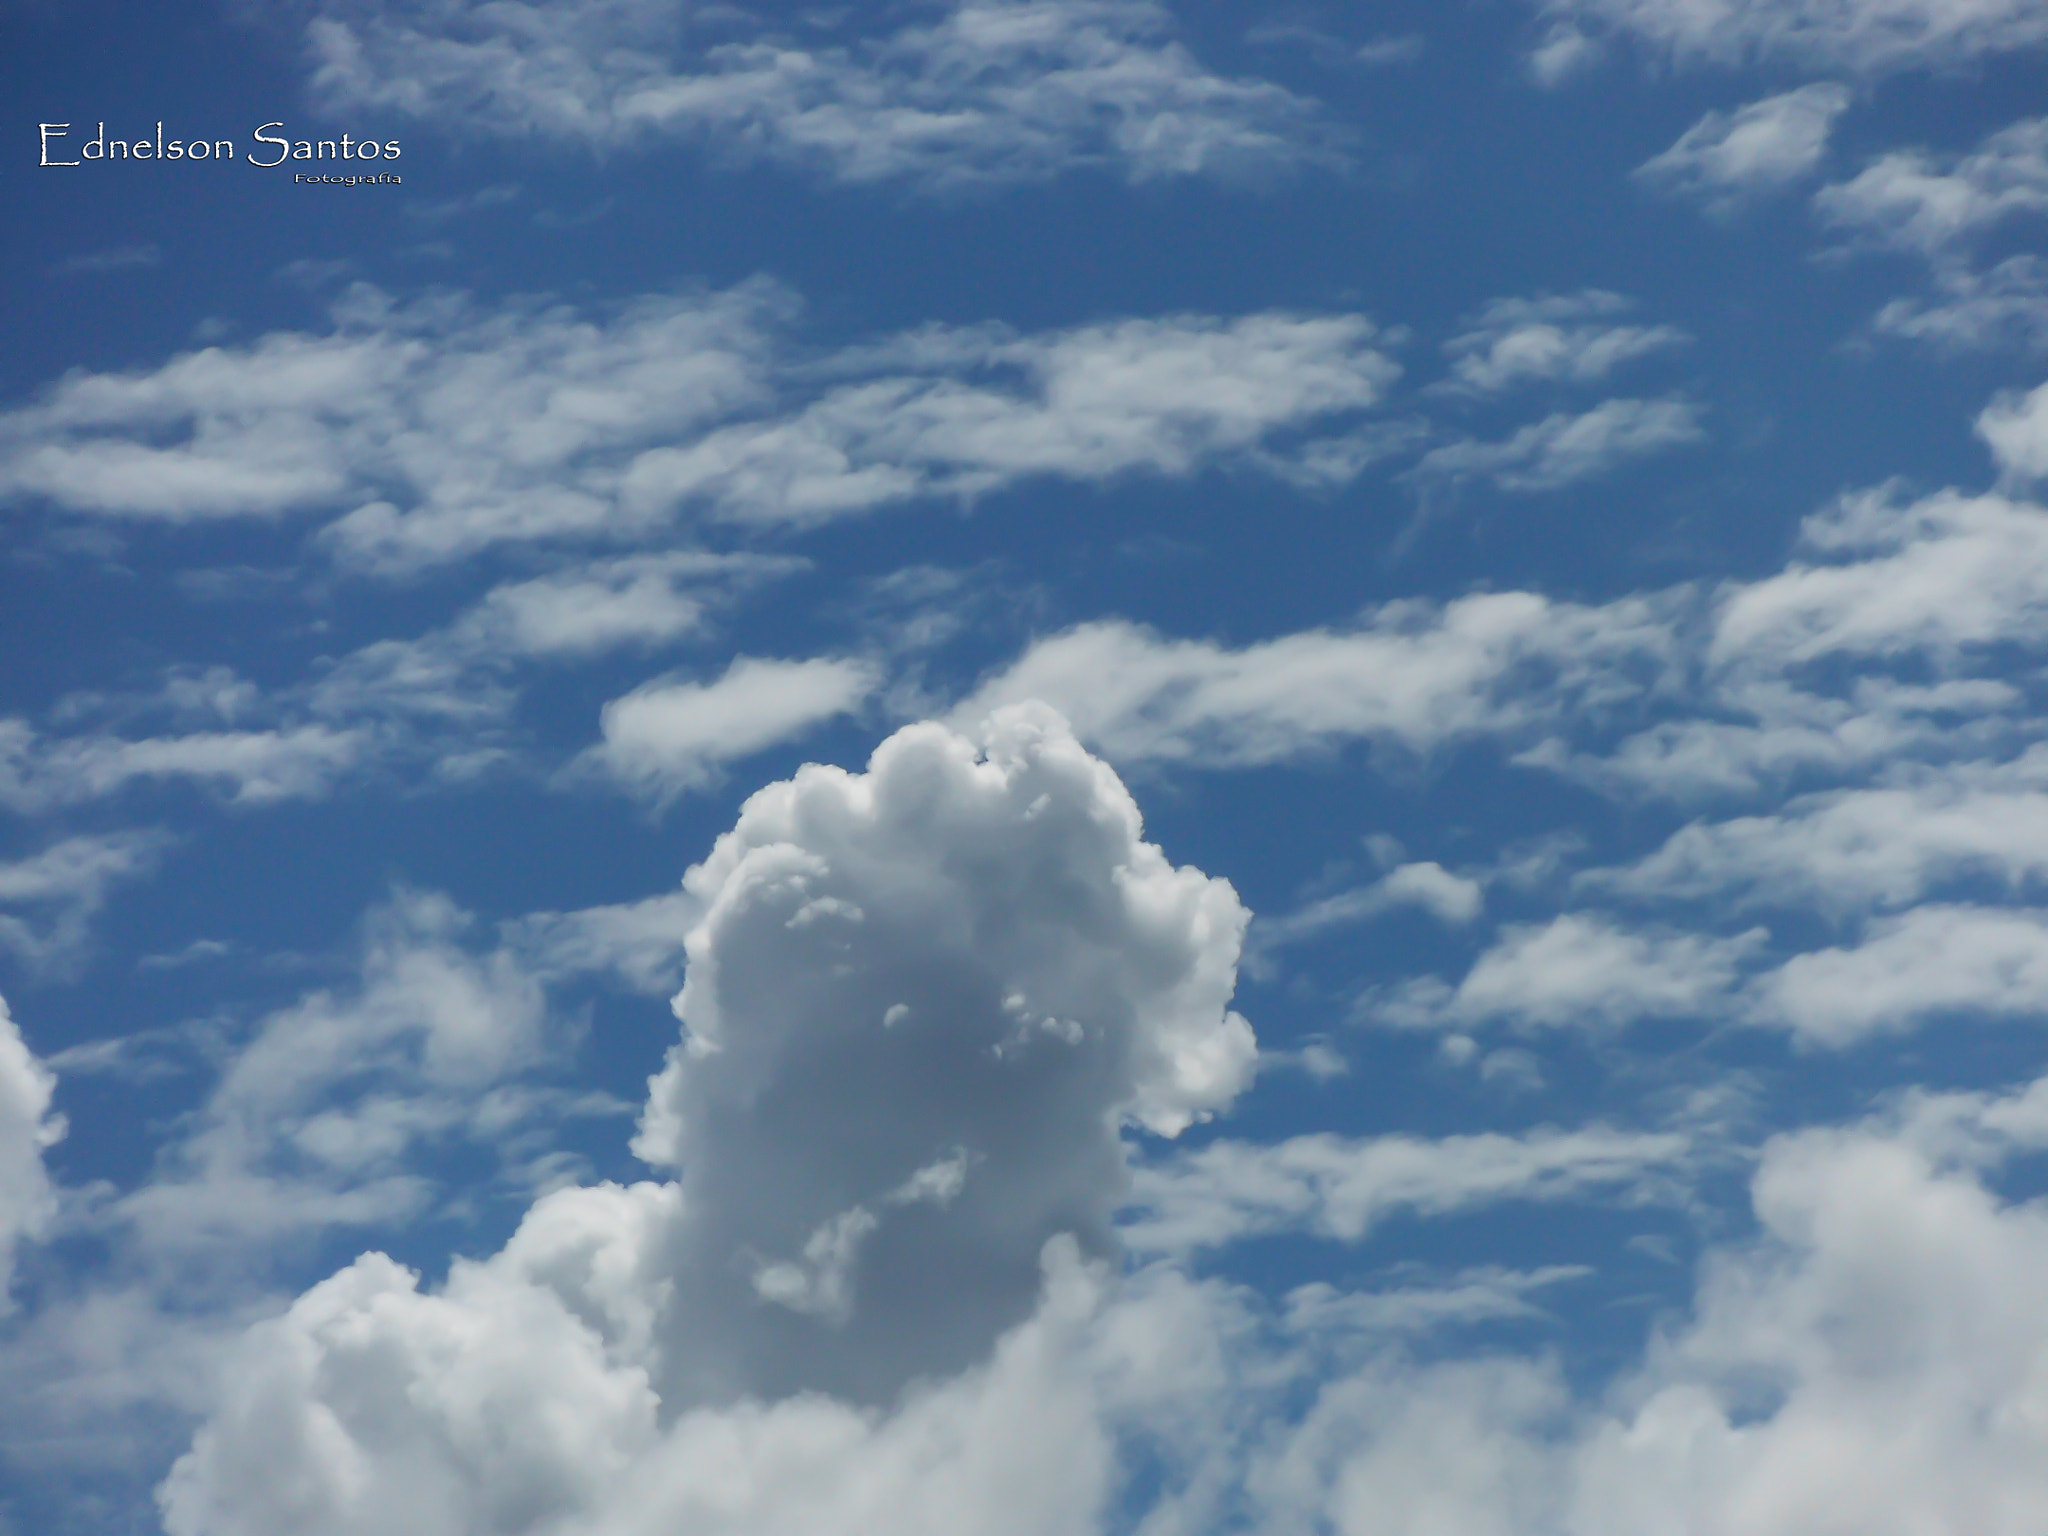 Fujifilm FinePix XP50 sample photo. Até as nuvens sabem o seu lugar e se esse é o nosso que seja o nosso céu photography